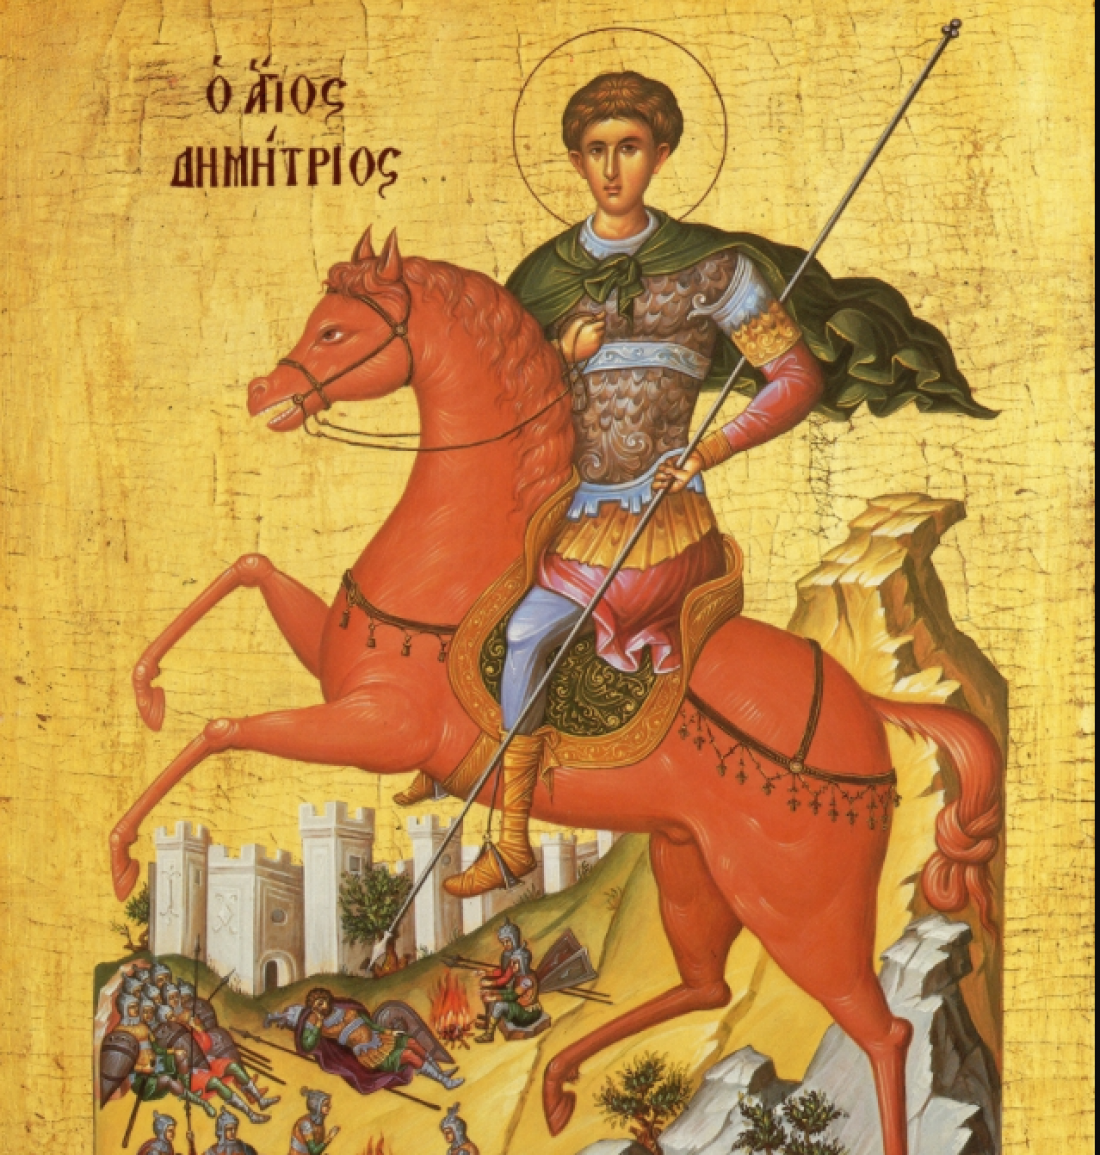 Γιατί ο Άγιος Δημήτριος θεωρείται προστάτης της Θεσσαλονίκης